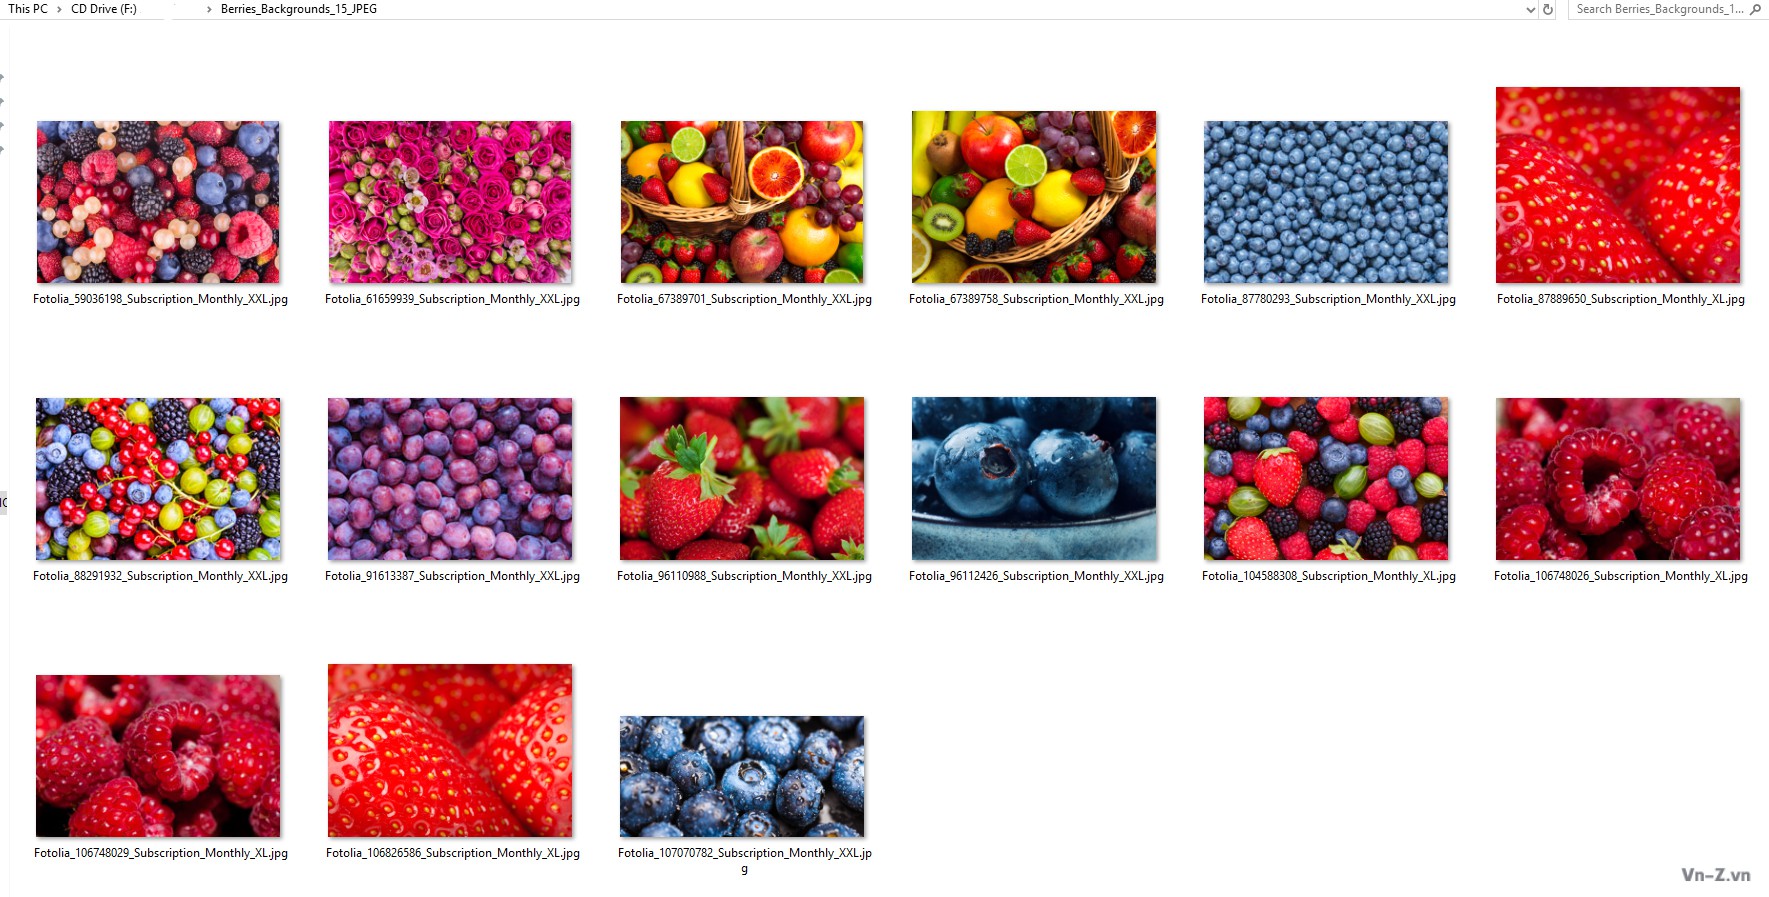 026-Berries_Backgrounds.jpg